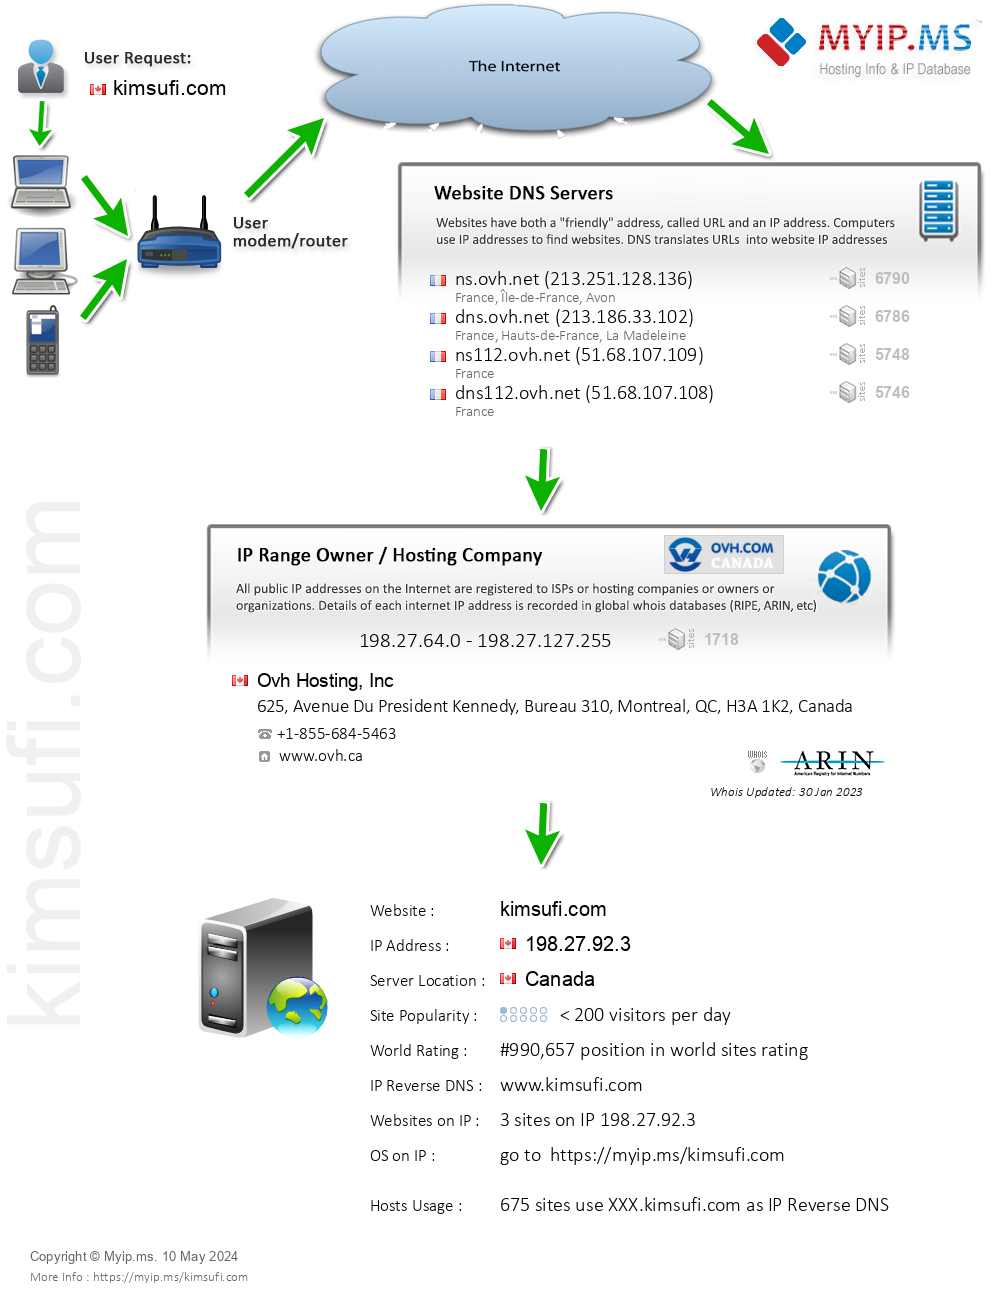 Kimsufi.com - Website Hosting Visual IP Diagram